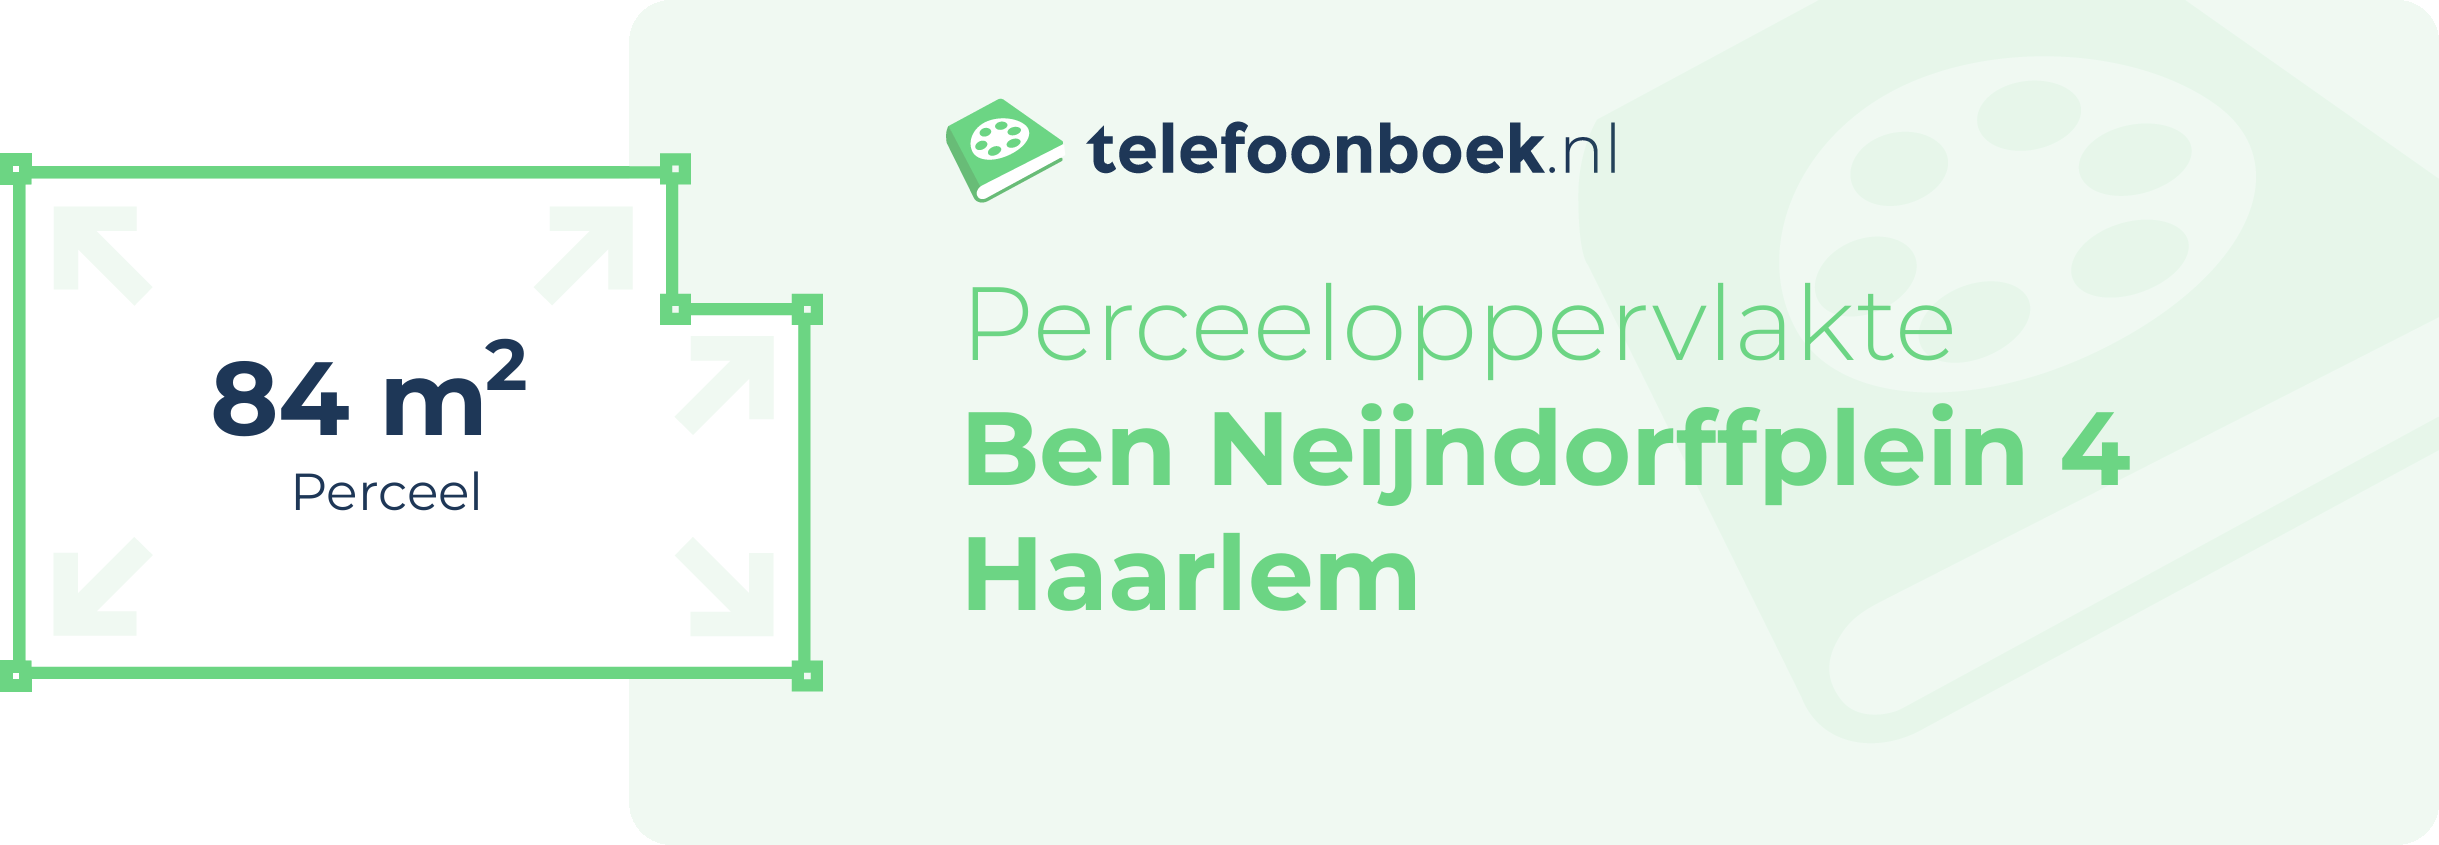 Perceeloppervlakte Ben Neijndorffplein 4 Haarlem